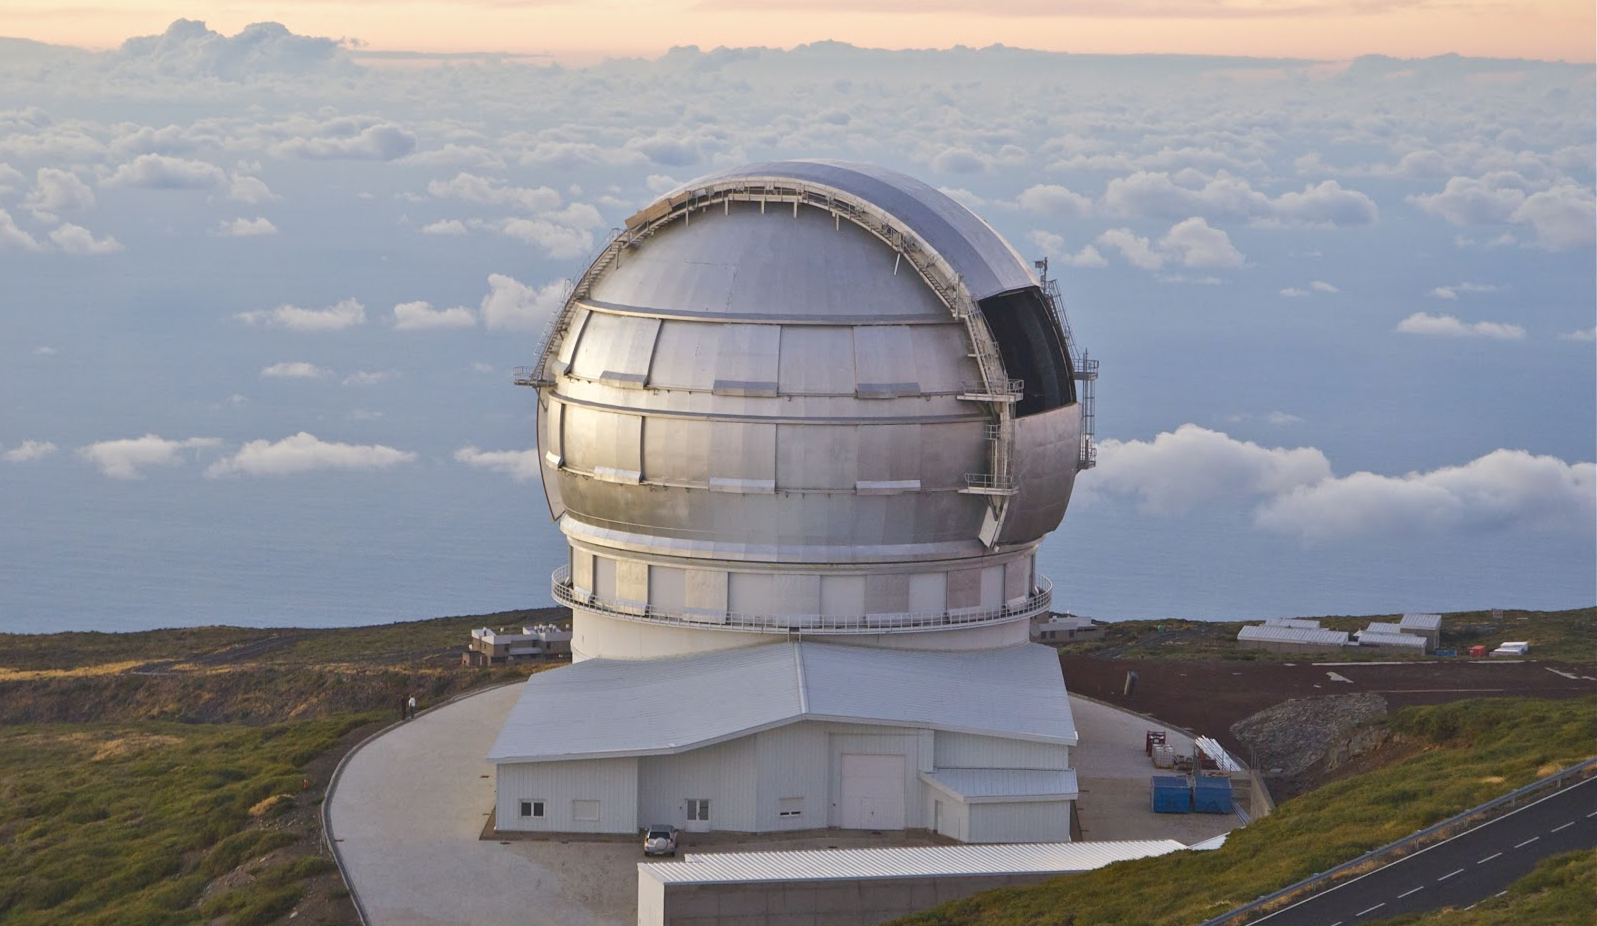 The Gran Telescopio Canarias